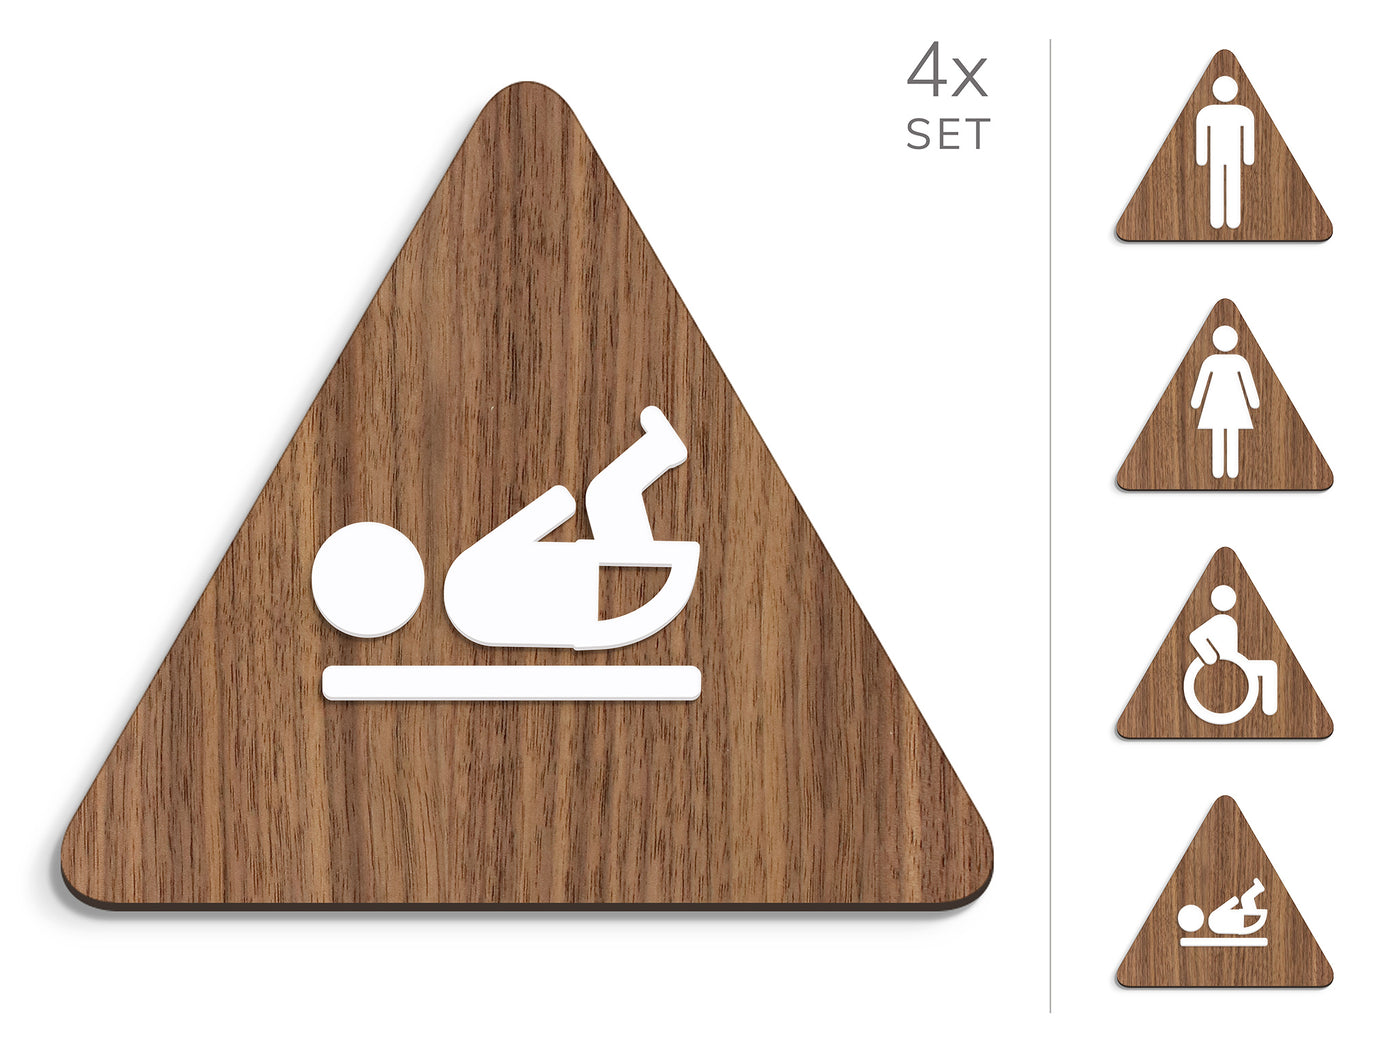 Classic, 4x Base Triangulaire - Jeu Panneau de signalisation toilettes, signalétique sanitaires - Homme, Femme, Handicapé, Table à langer